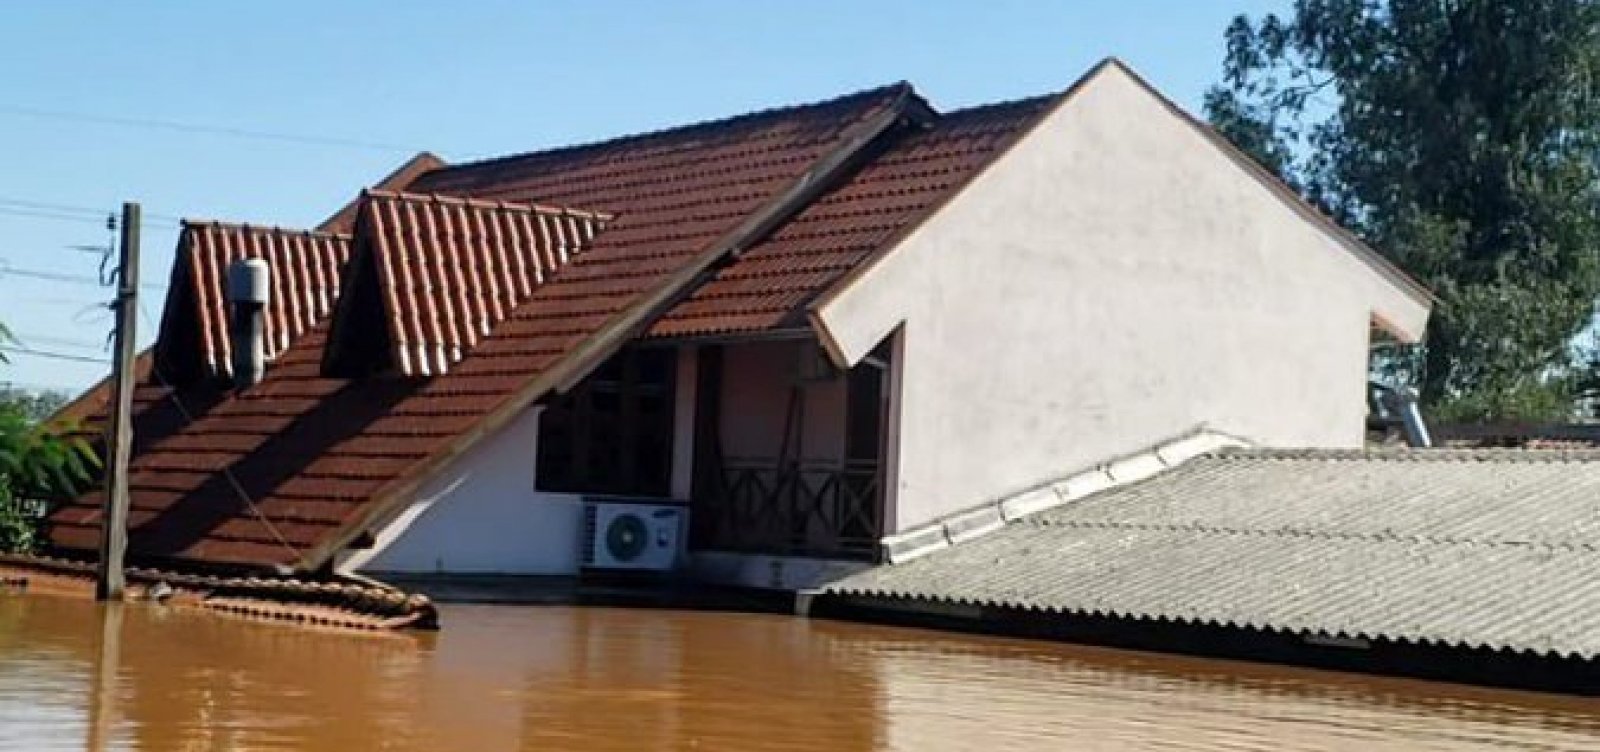 Prefeito gaúcho expõe situação da própria casa após enchentes no RS: "perdi minha história"